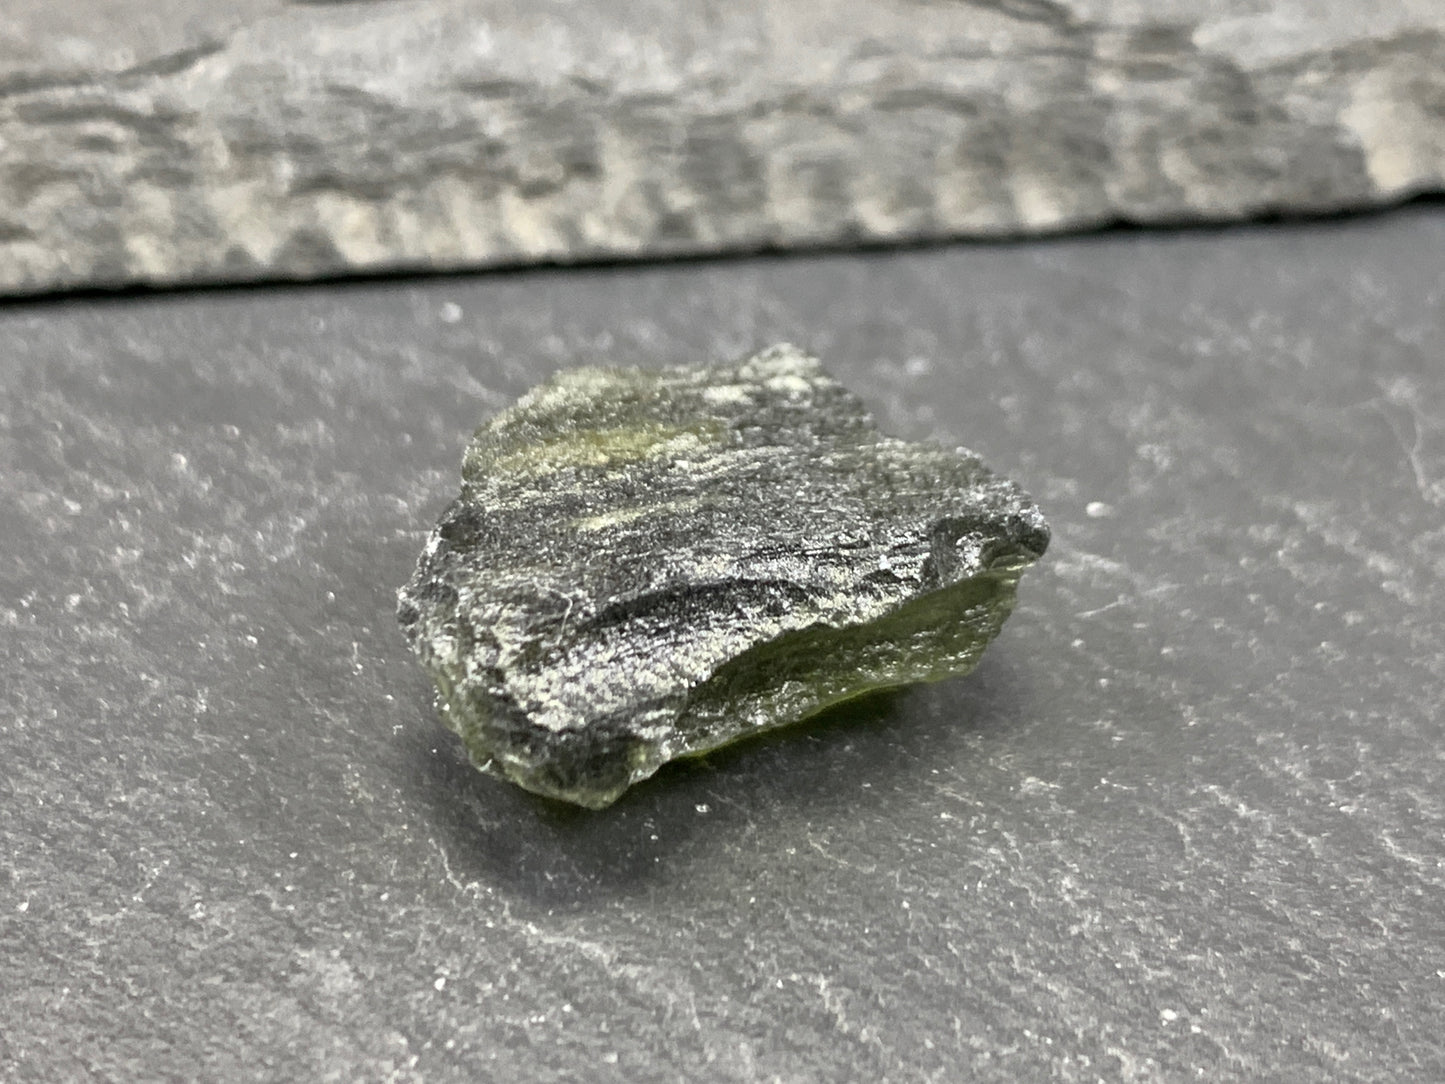 Moldavite 2.98g - Raw Moldavite from Chlum